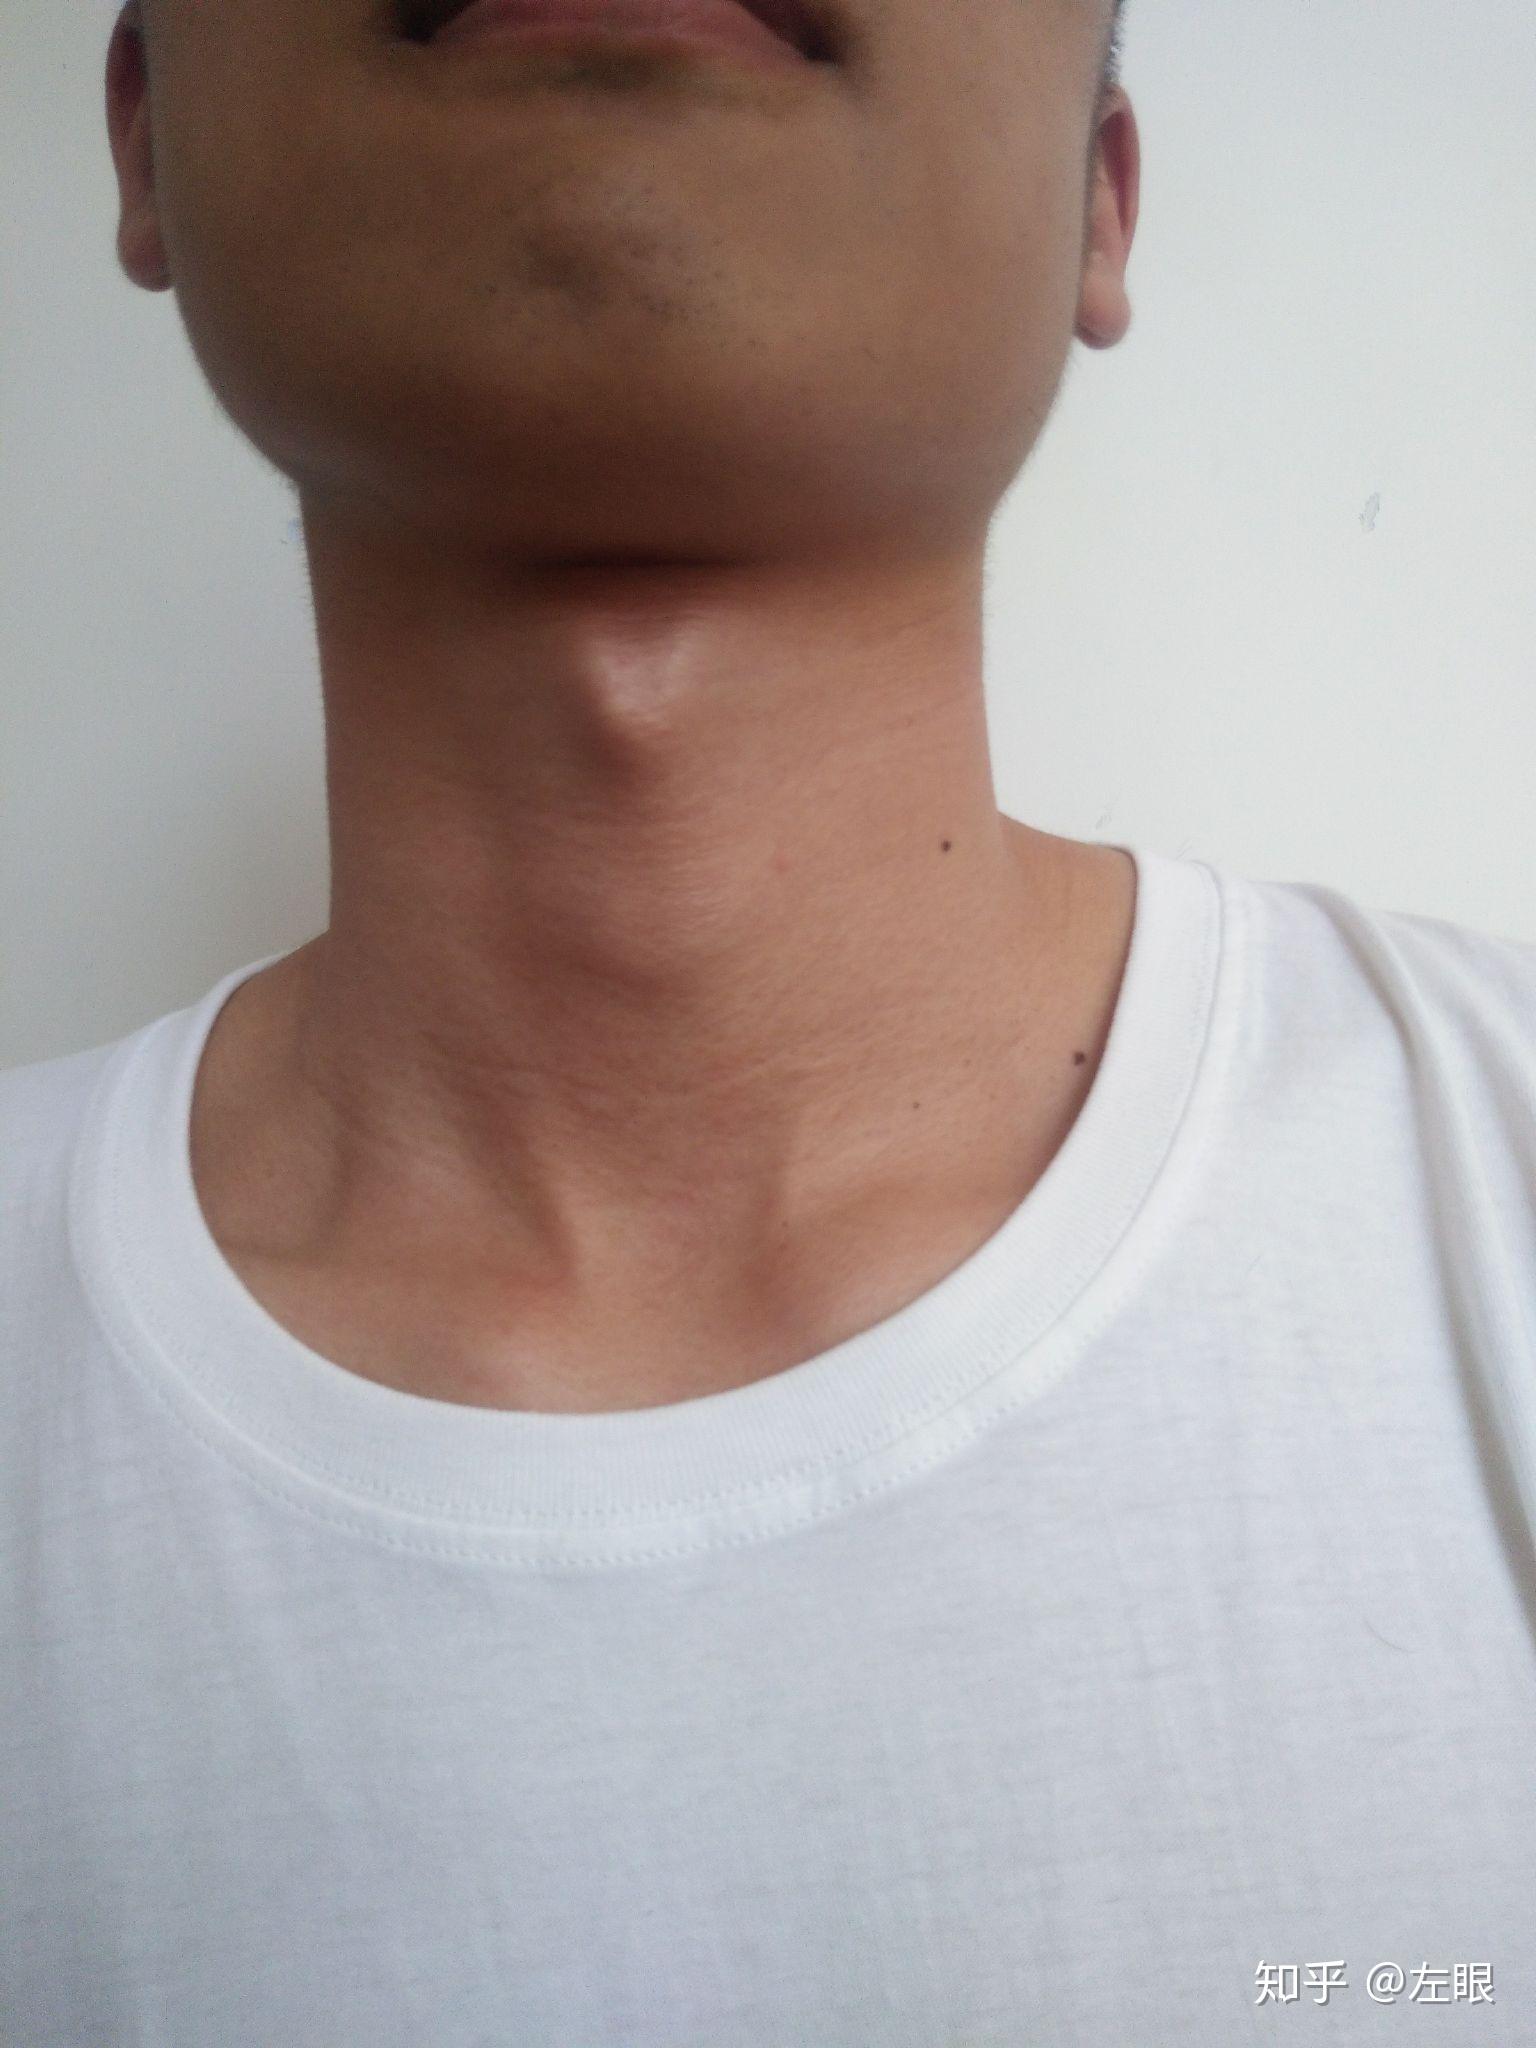 喉结照片男15岁图片